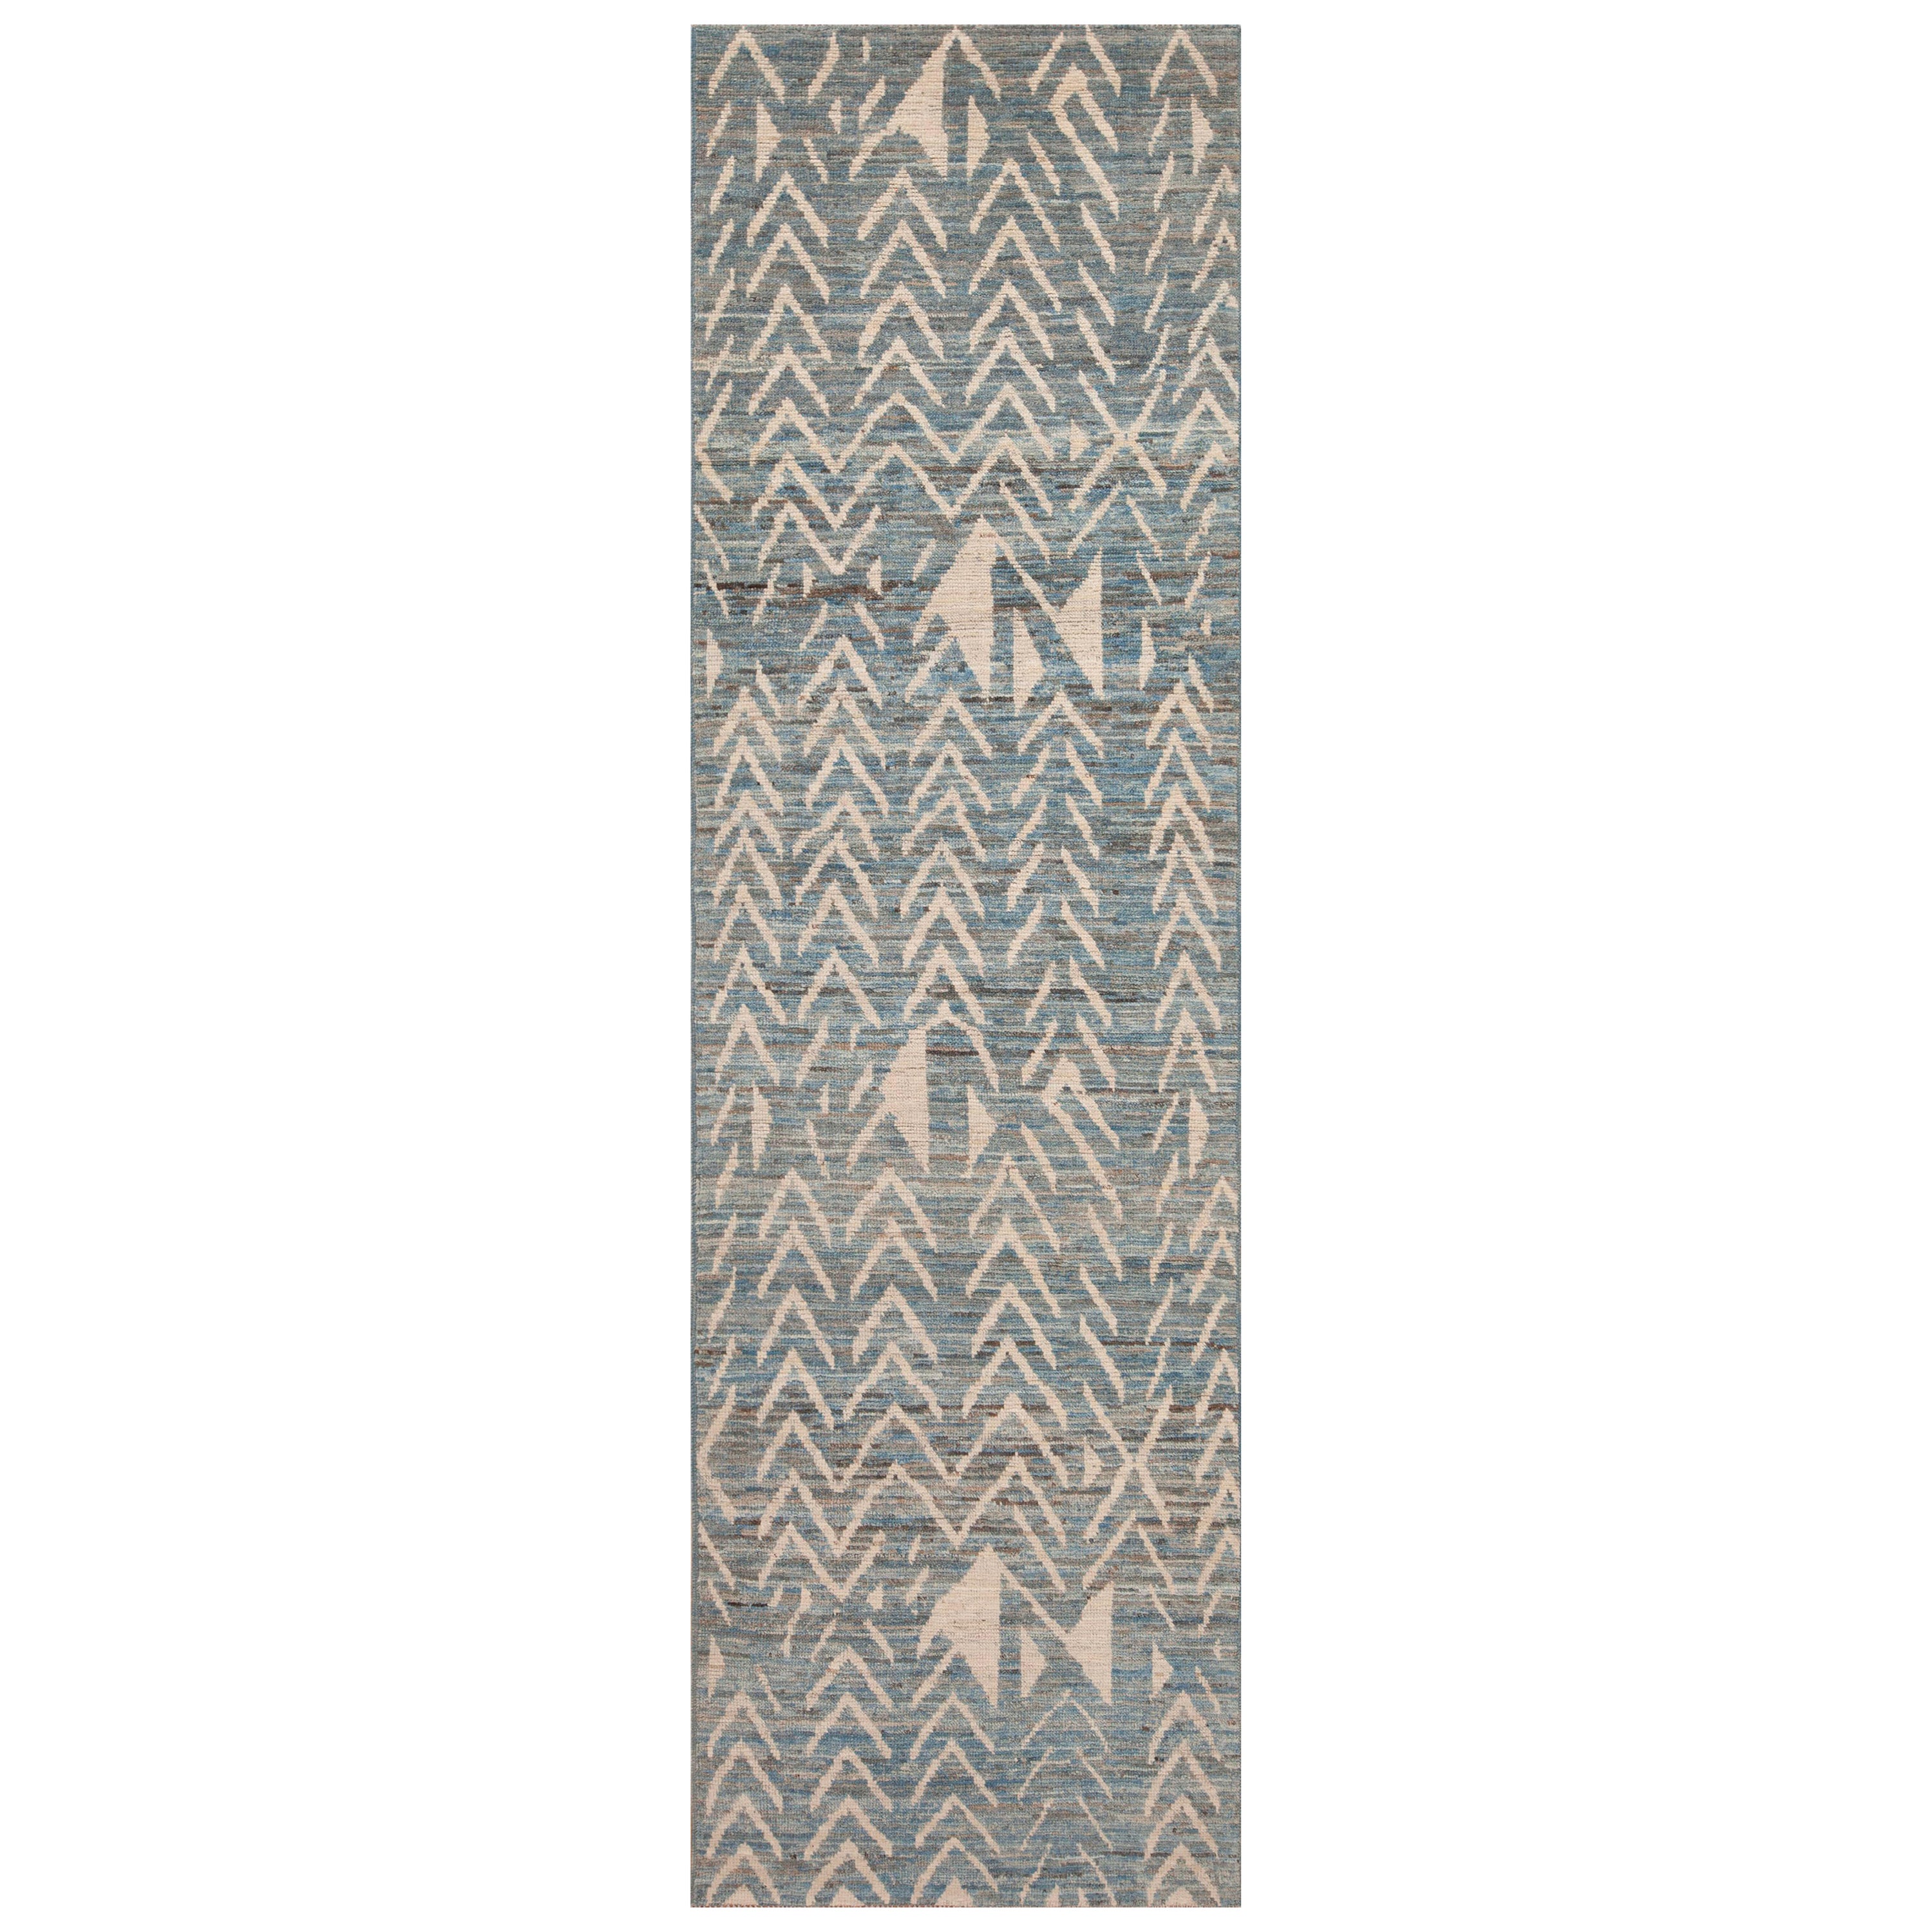 Tapis moderne bleu abrache et tribal géométrique ivoire de la collection Nazmiyal, 3' x 10'8"